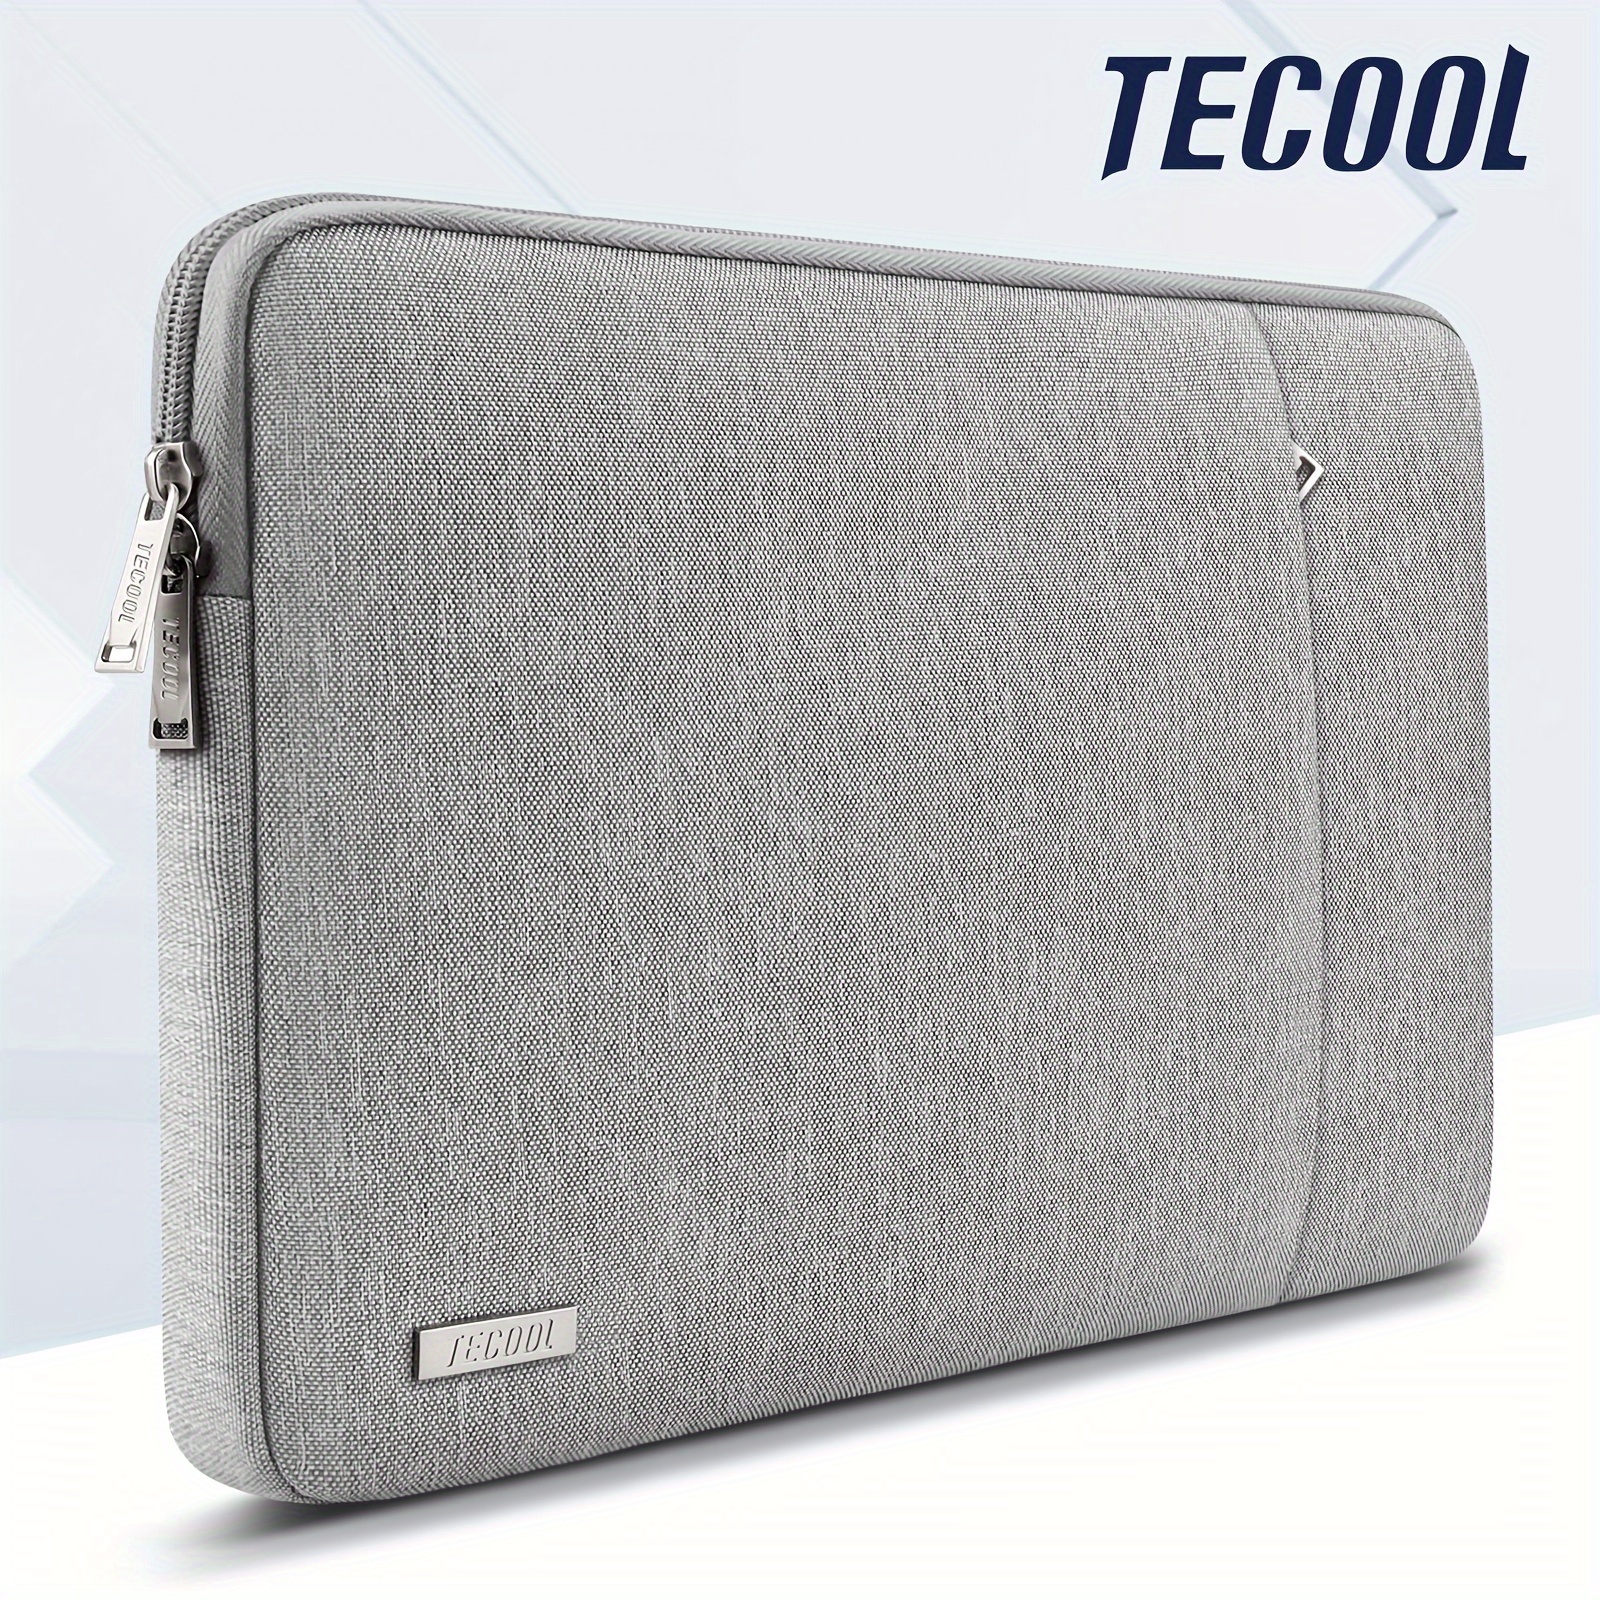 M2 Laptop Temu Air Macbook For Tecool Case - Macbook 13 Sleeve 1